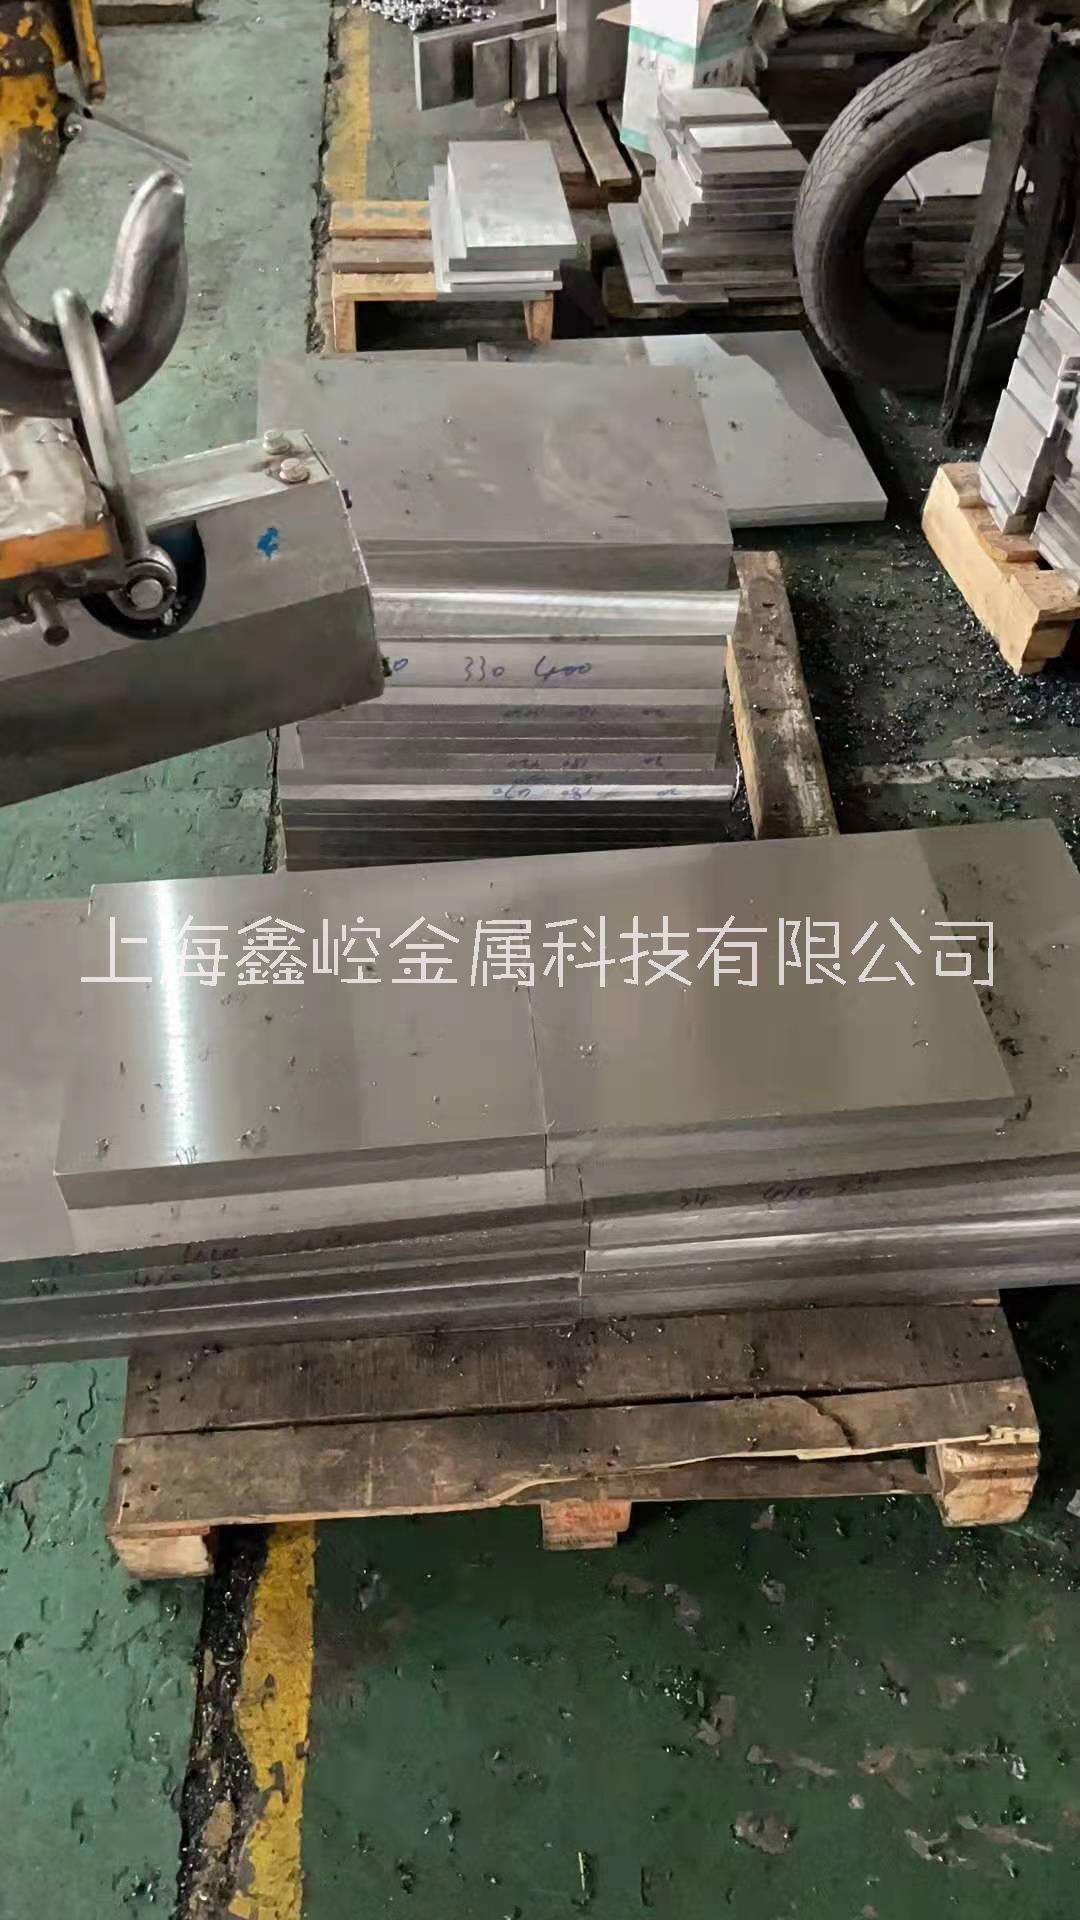 上海厂家批发零售各类模具材料 模具加工 模具定制